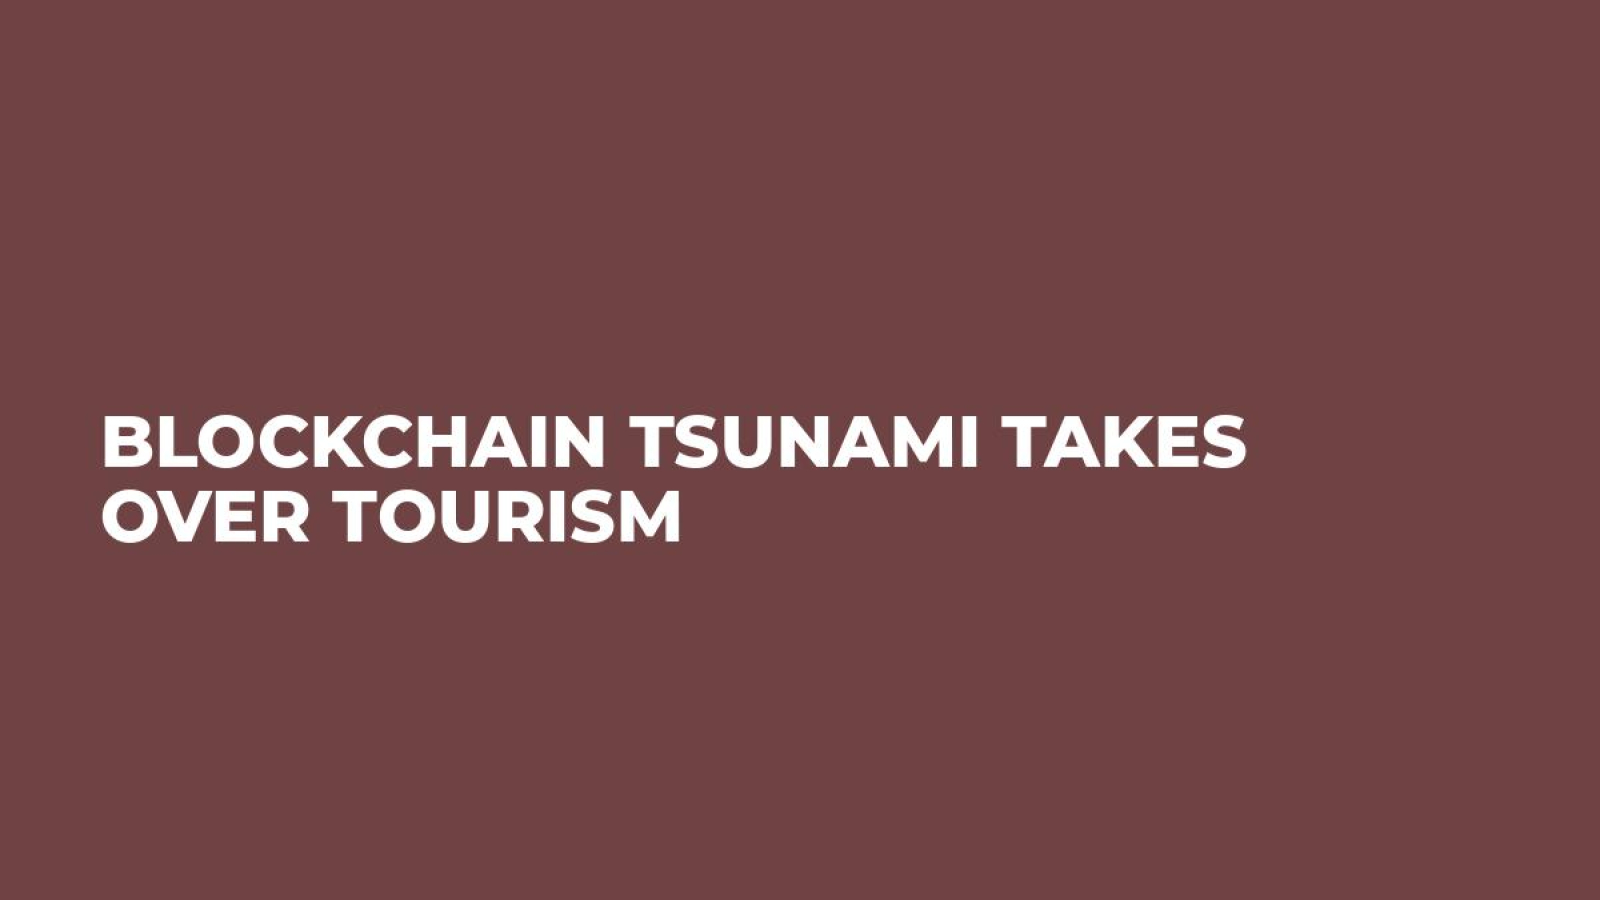 Blockchain tsunami takes over tourism